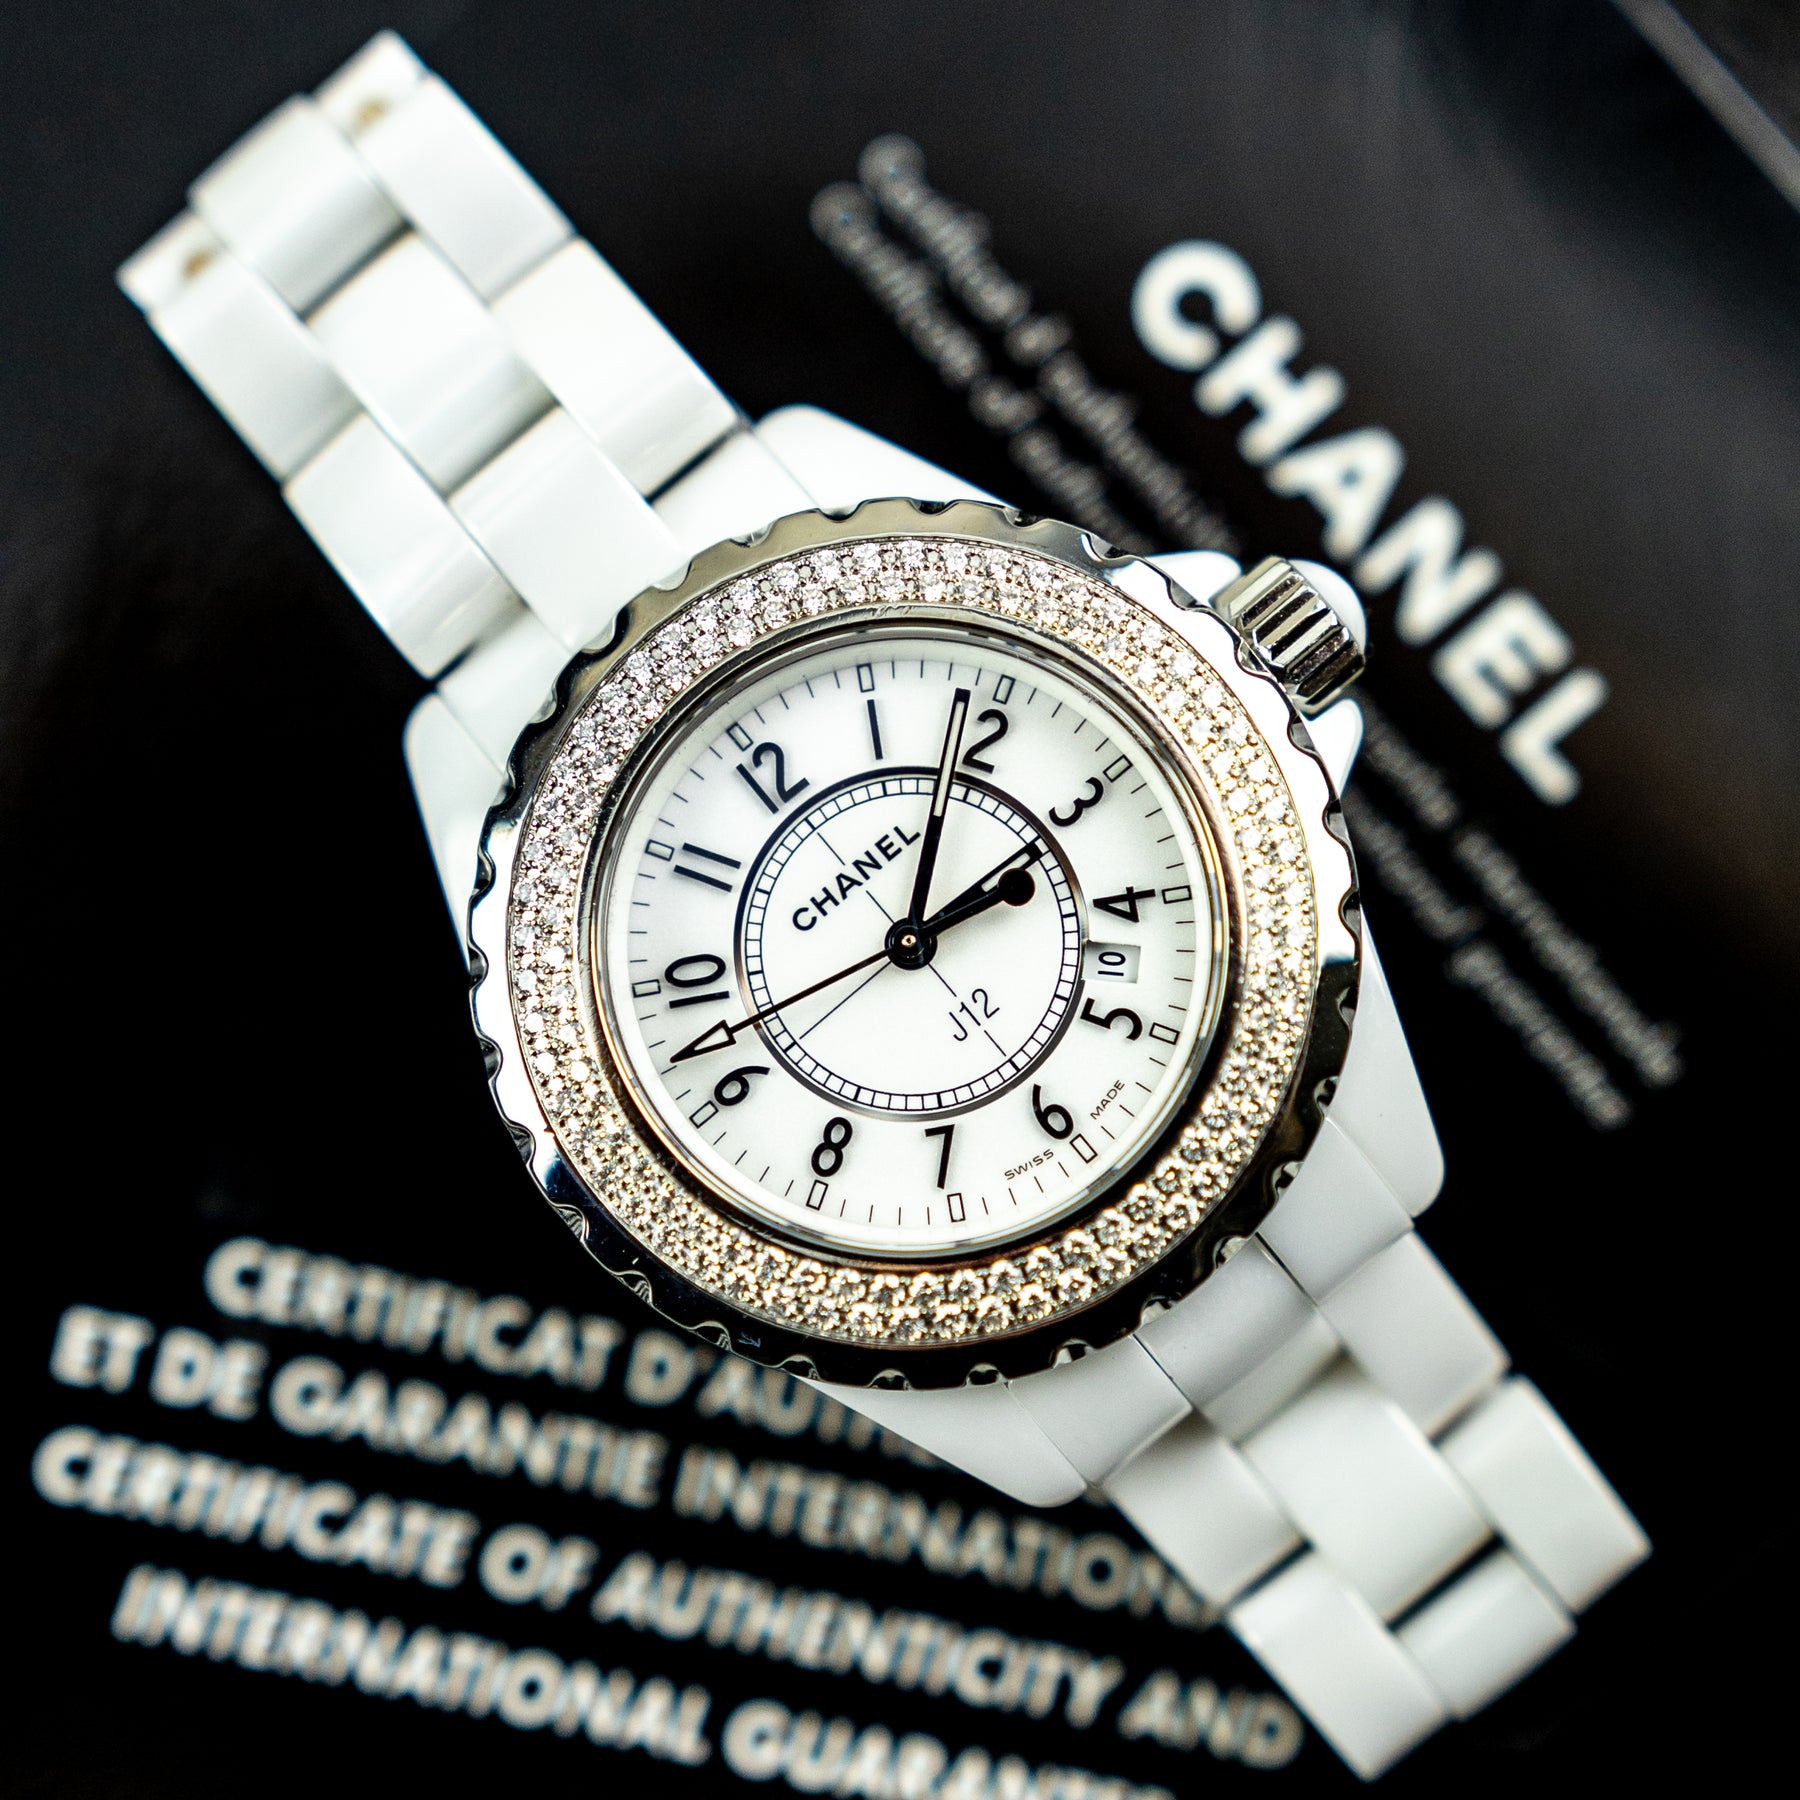 2007 Chanel J12 Date, White Ceramic & Diamond Bezel, 33mm, H0967